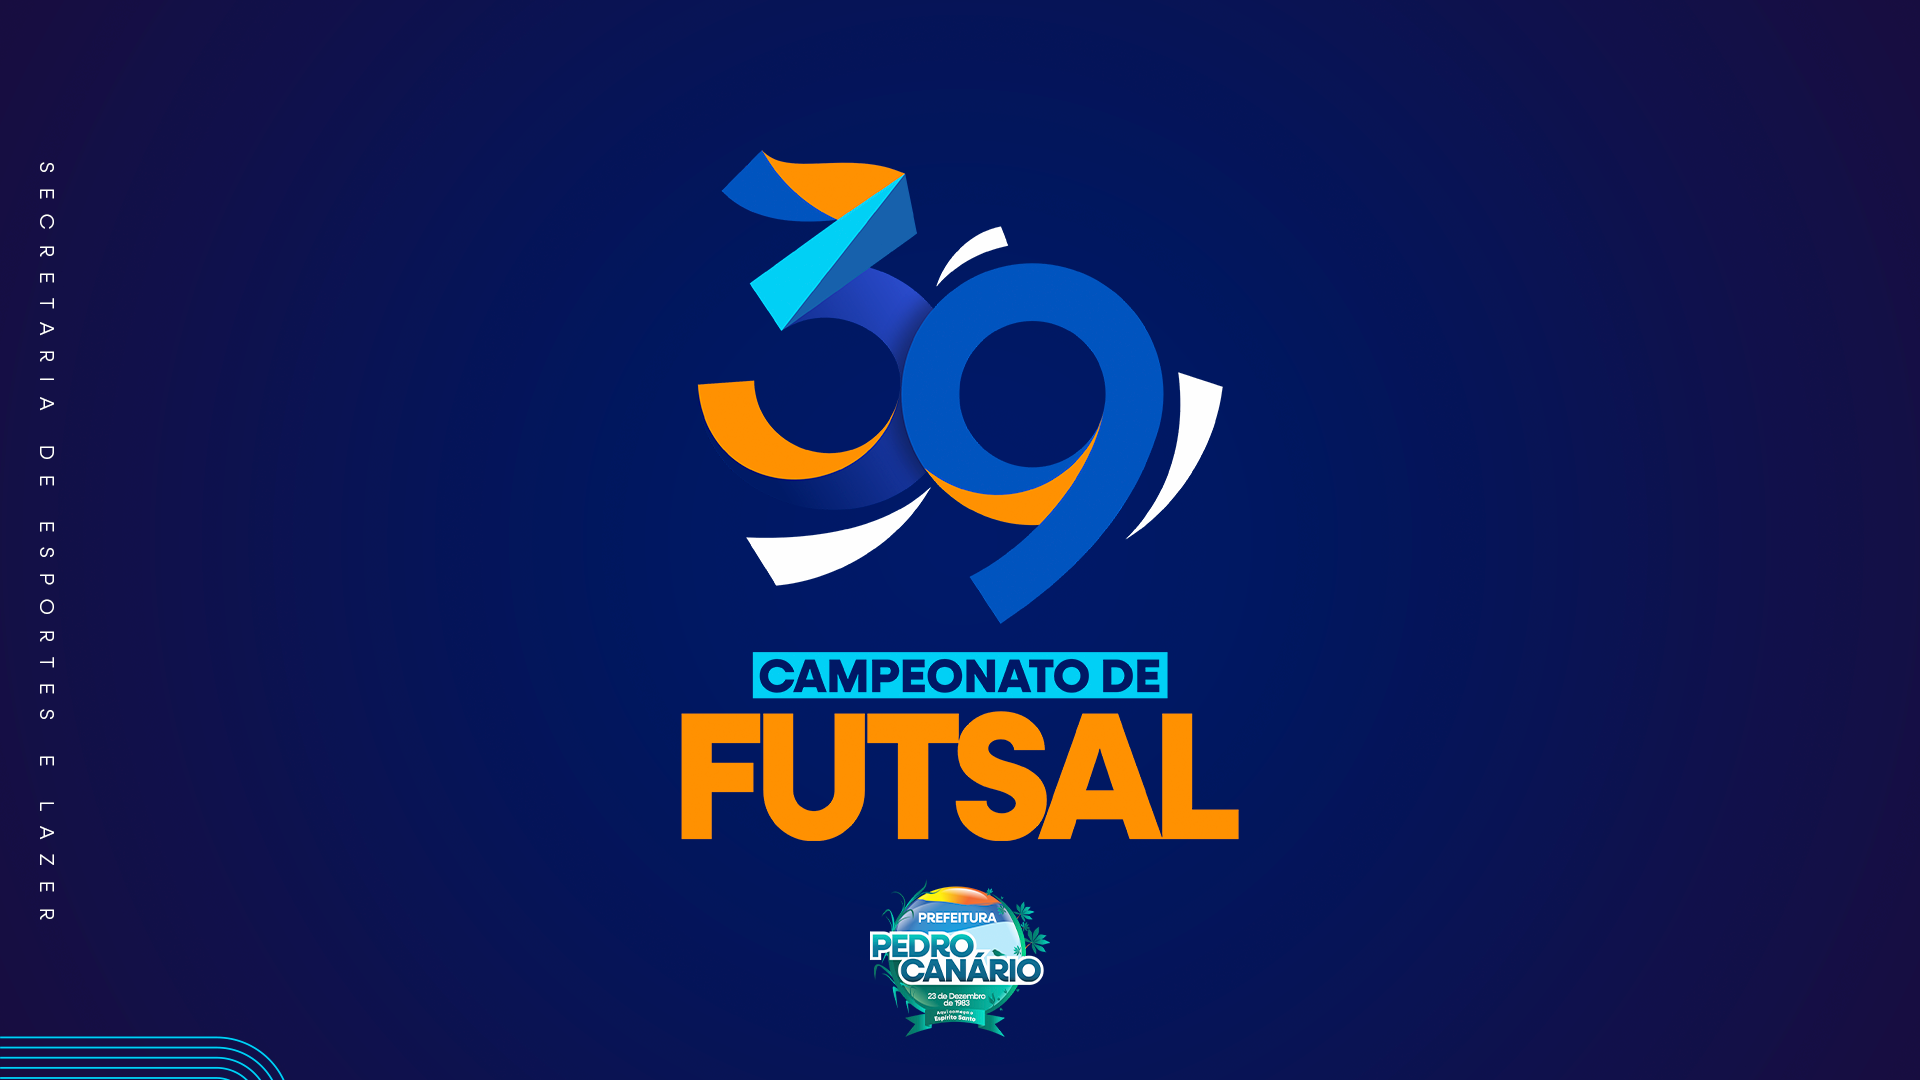 39º Campeonato Municipal de Futsal começa nesta segunda-feira em Pedro Canário 